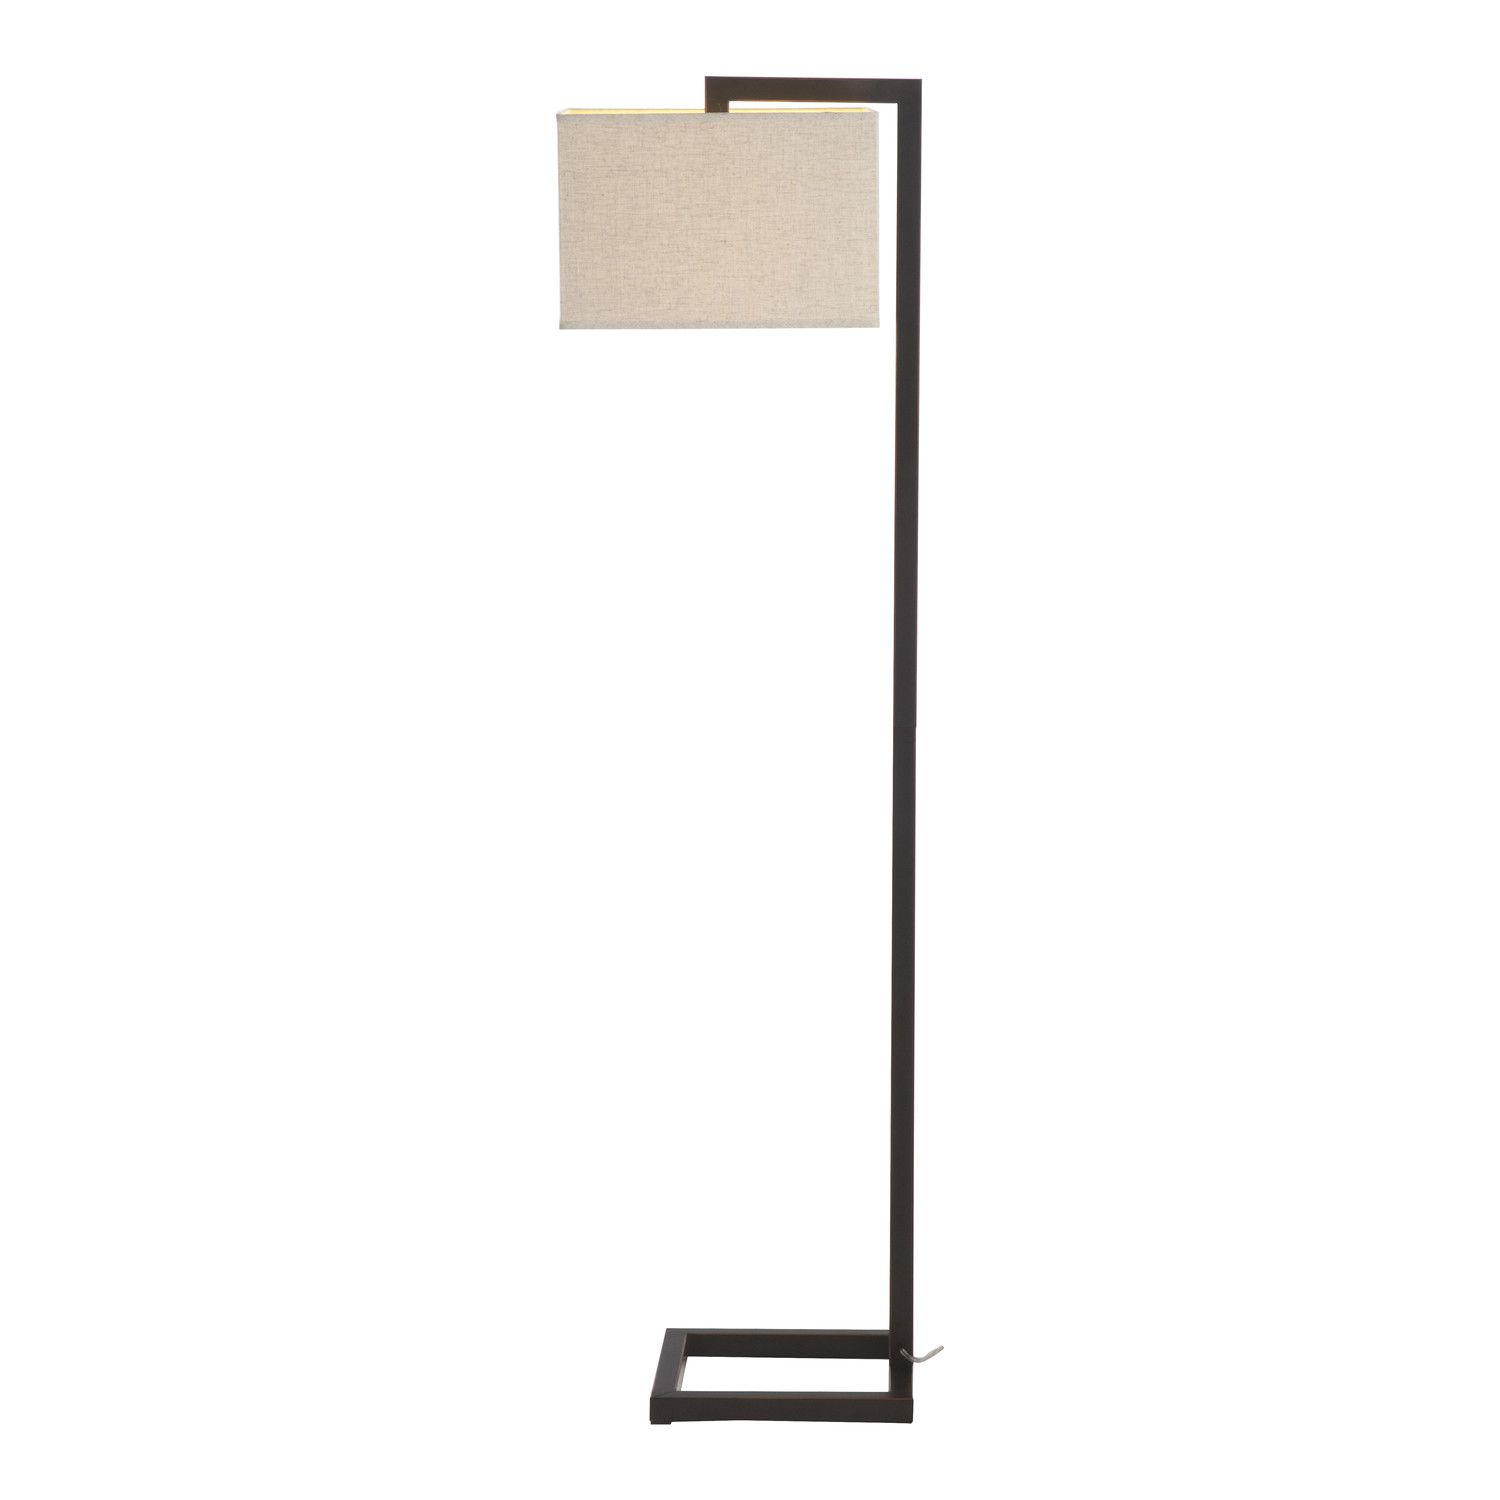 Brayden Studio Welton 64 Floor Lamp Home Decor Ideas throughout proportions 1500 X 1500